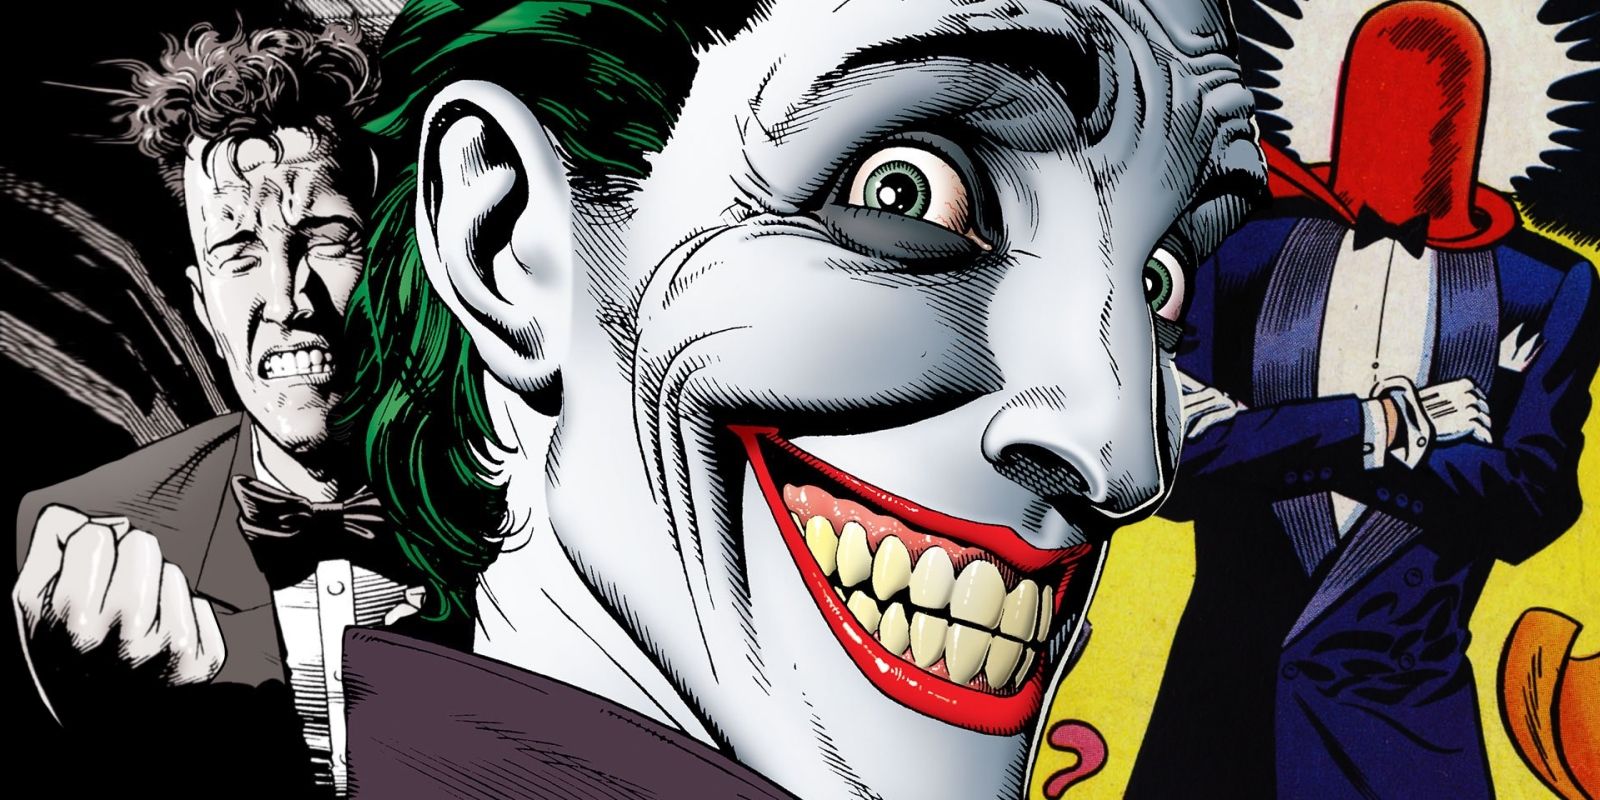 The Joker Killing Joke Red Hood Origin Story